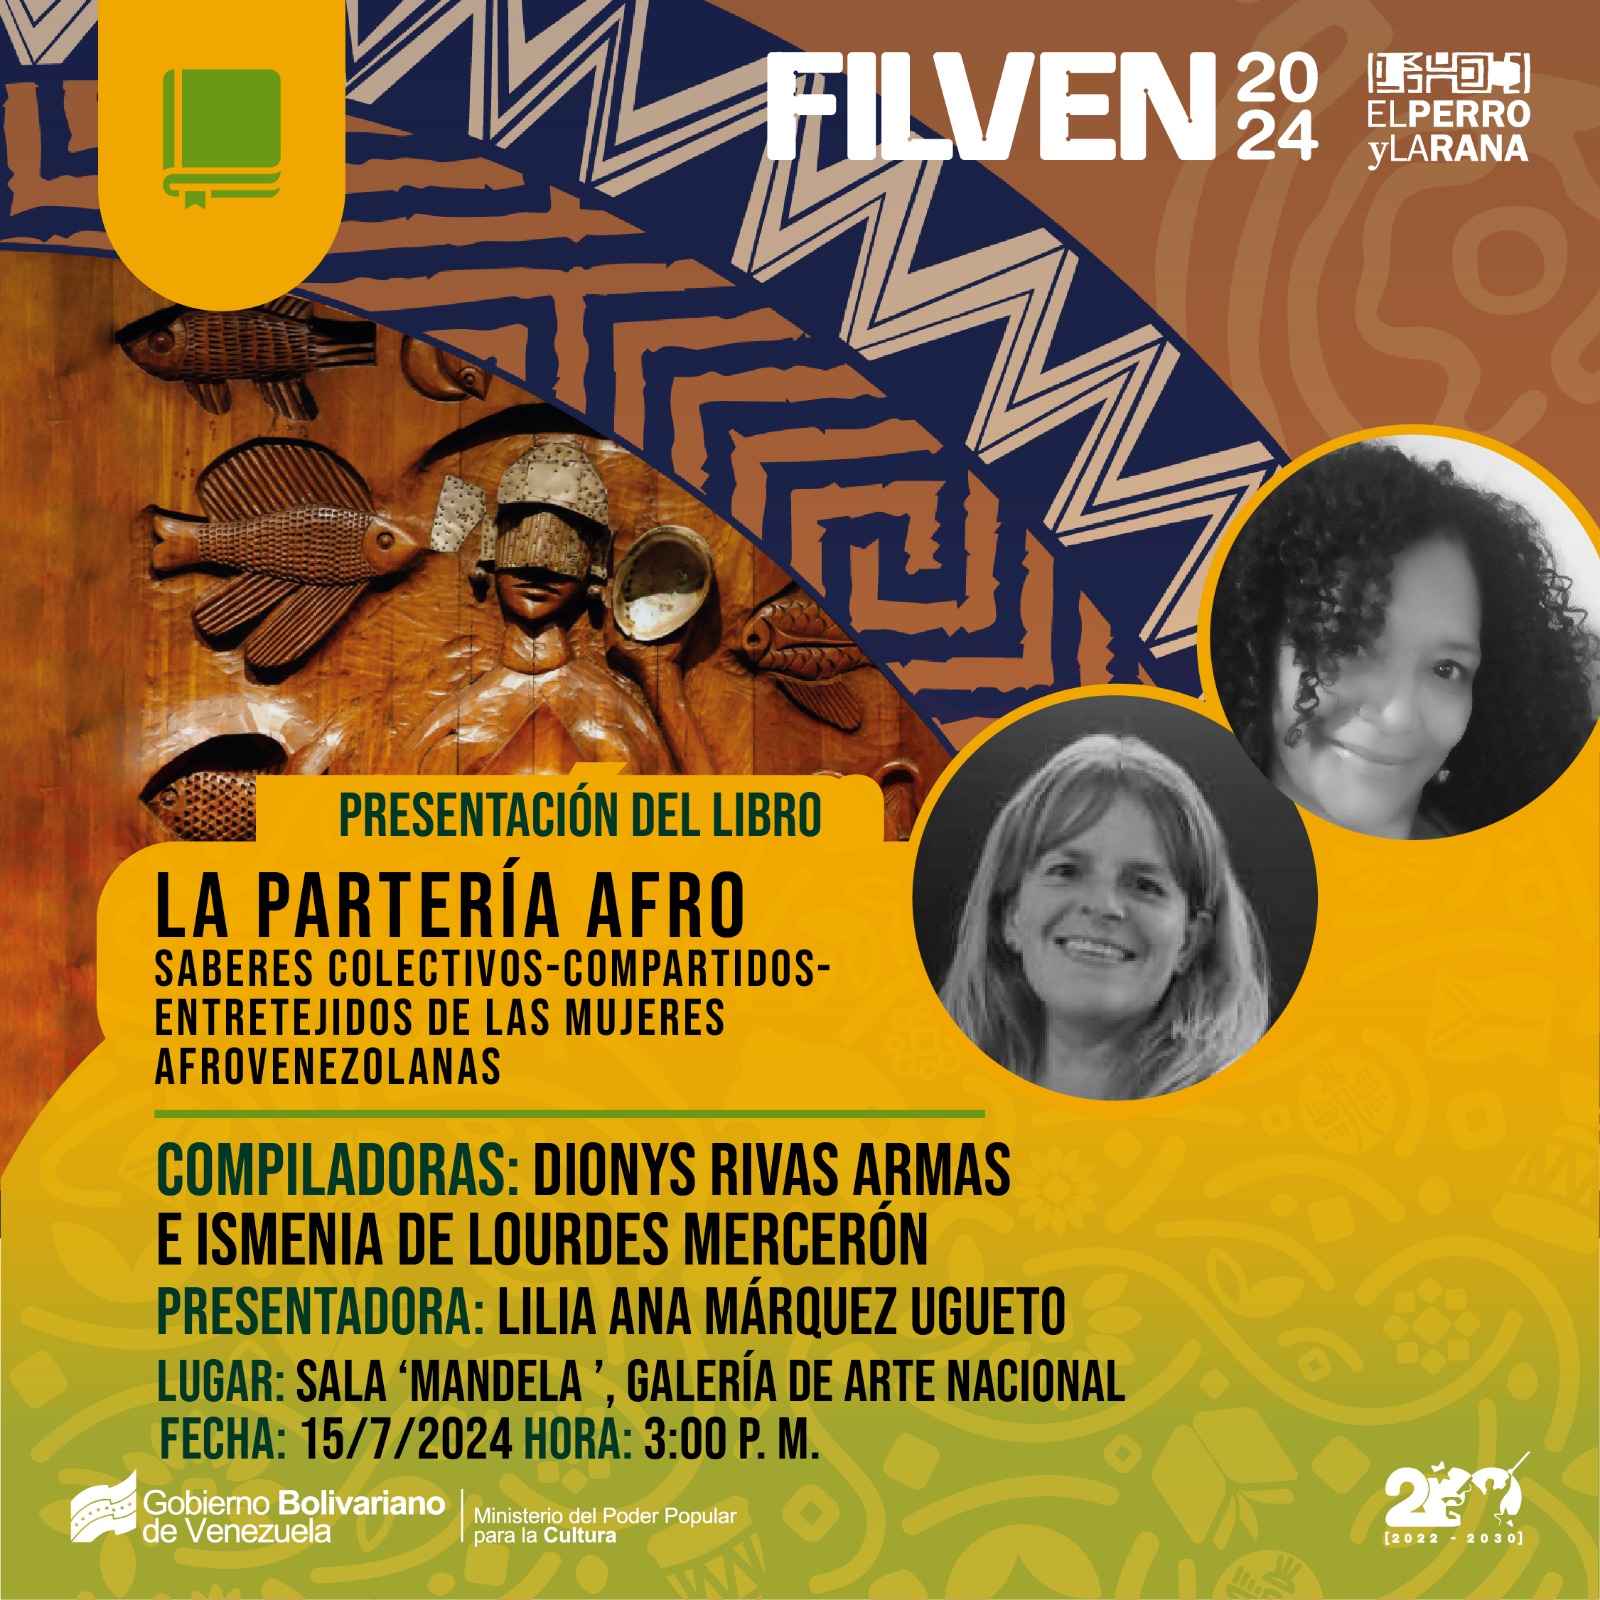 Presentan libro “La Partería Afro»: Saberes colectivos-compartidos-entretejidos de las mujeres afrovenezolanas” en FILVEN 2024